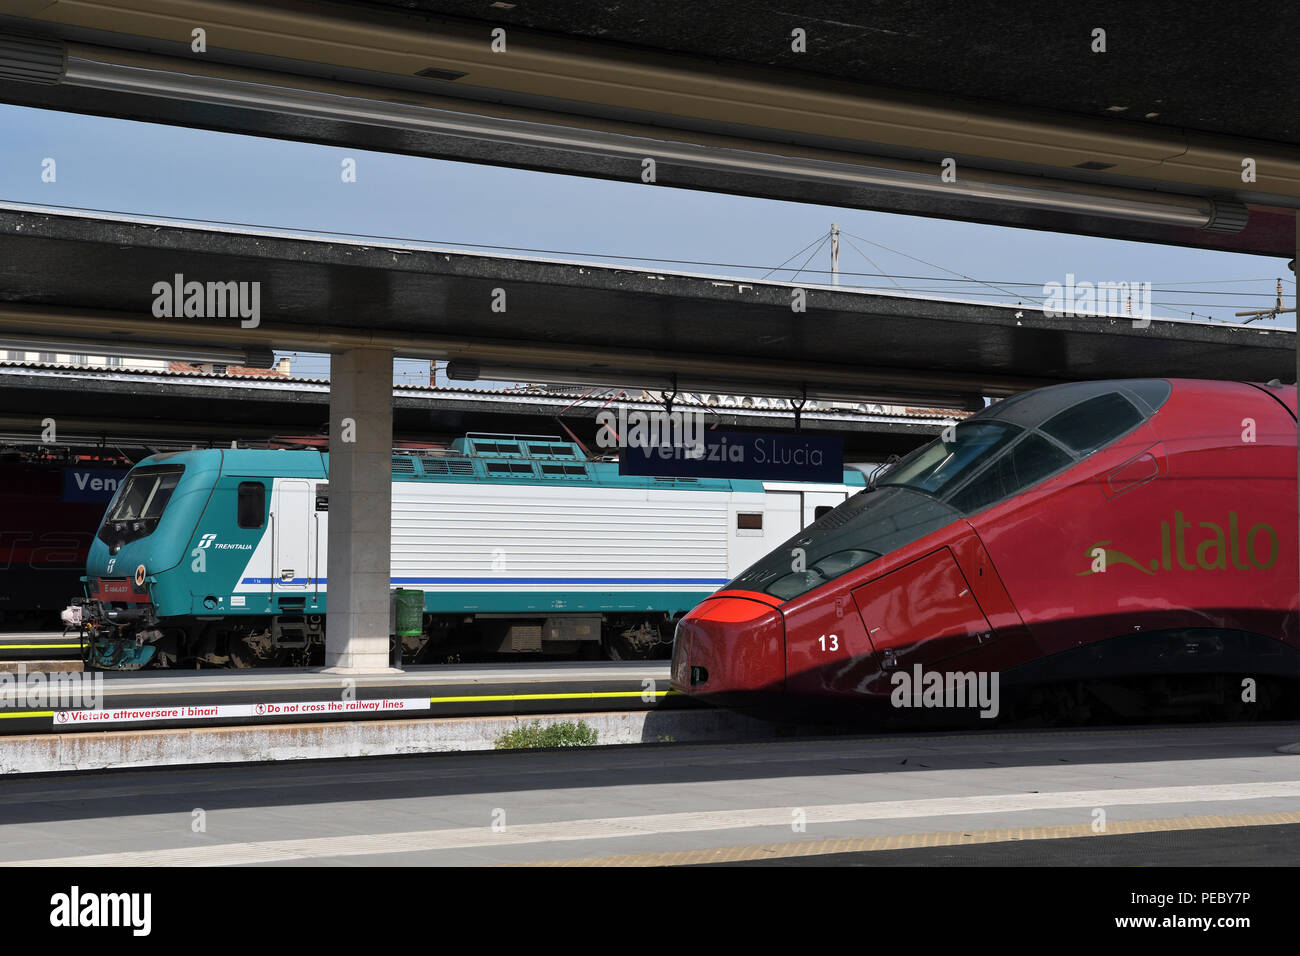 trains at santa lucia station;class E464;Italo set 13;venice;italy Stock Photo